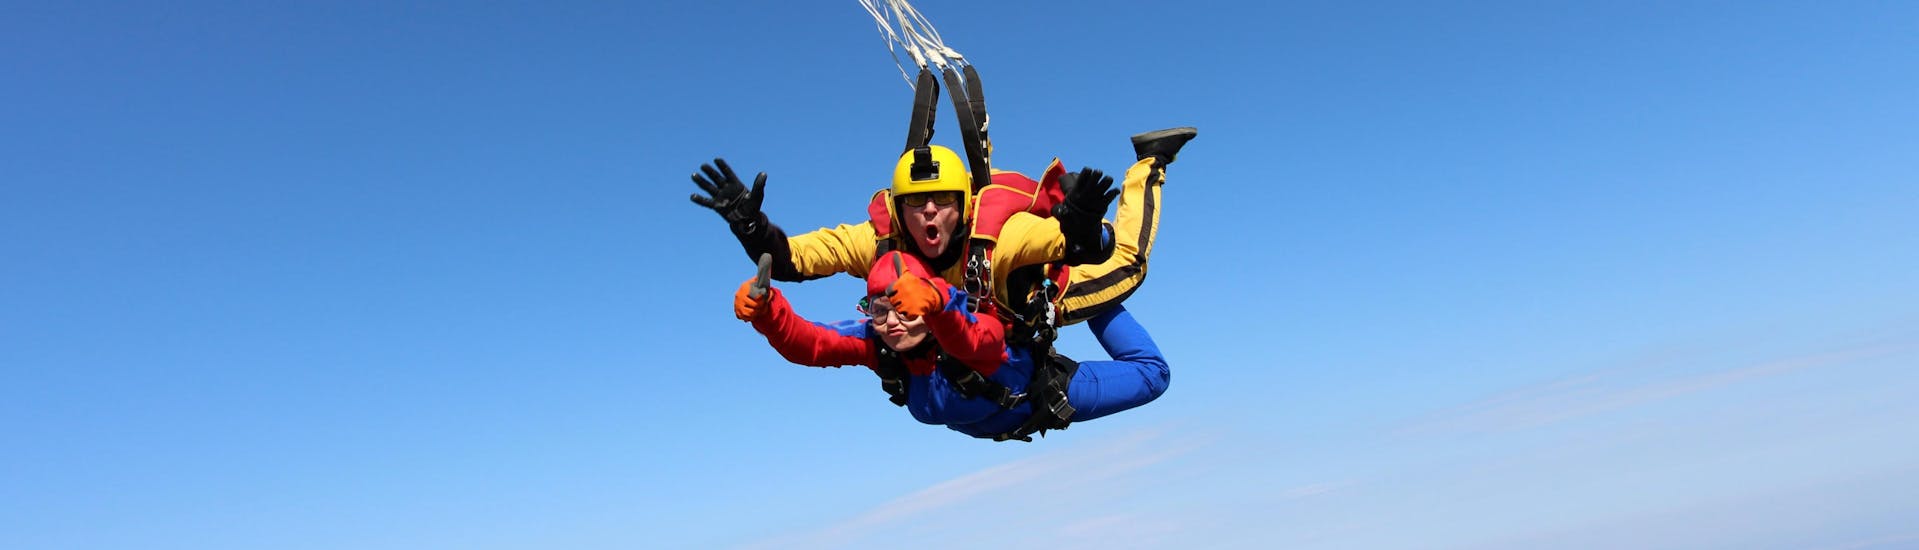 Un parachutiste tout sourire lors d'un saut en tandem dans la top destination de saut en parachute Vidova Gora.